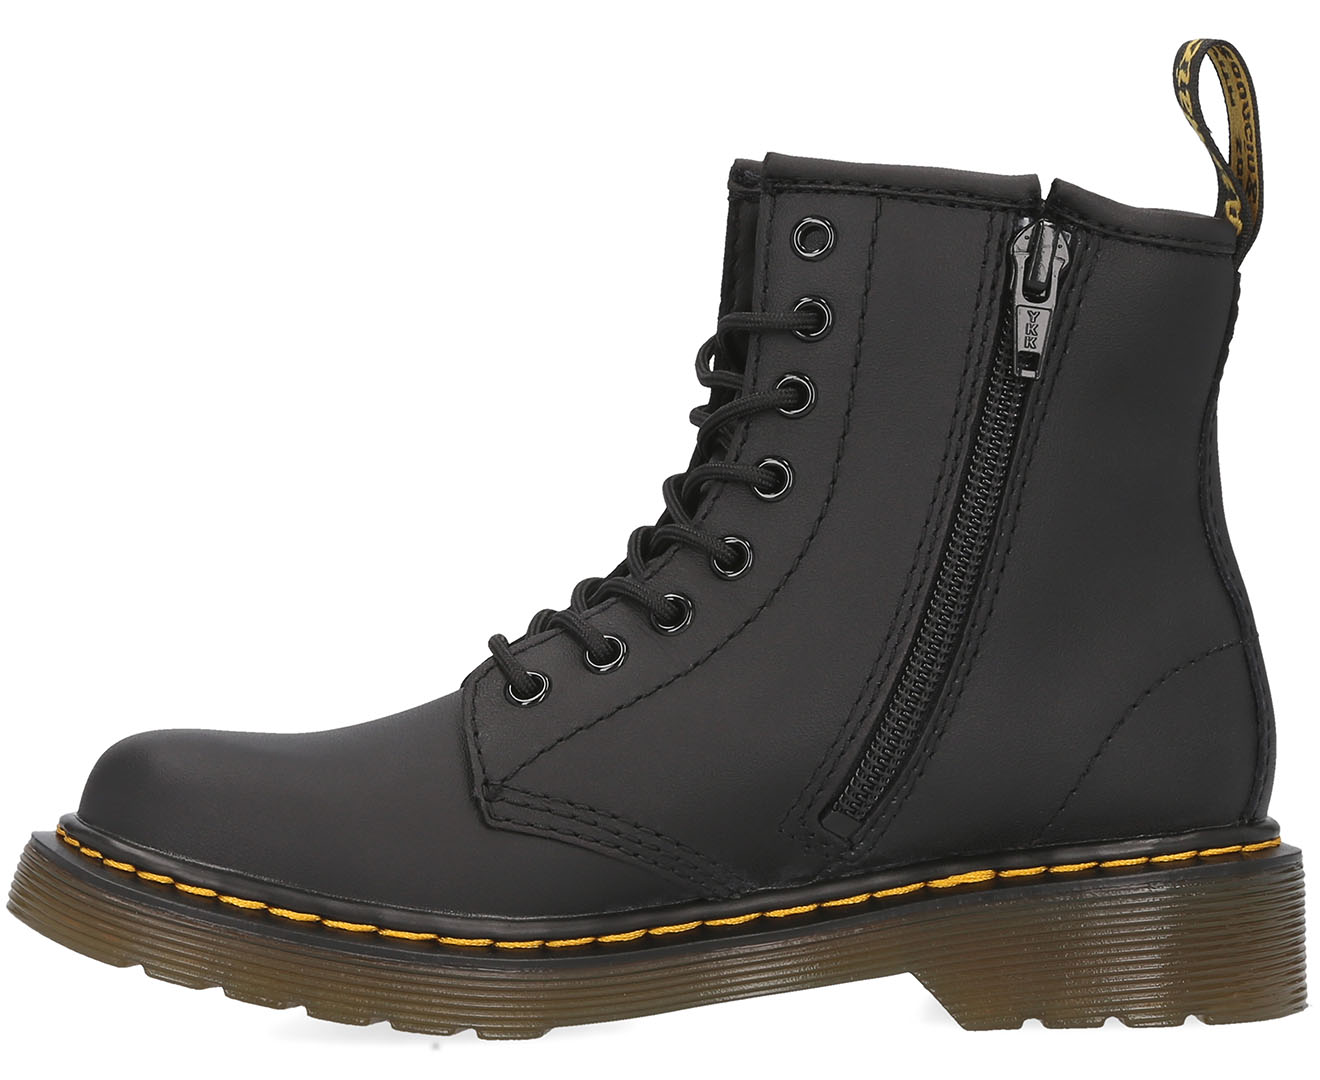 Dr. Martens 1460 Junior Boots - Black Softy | Catch.com.au